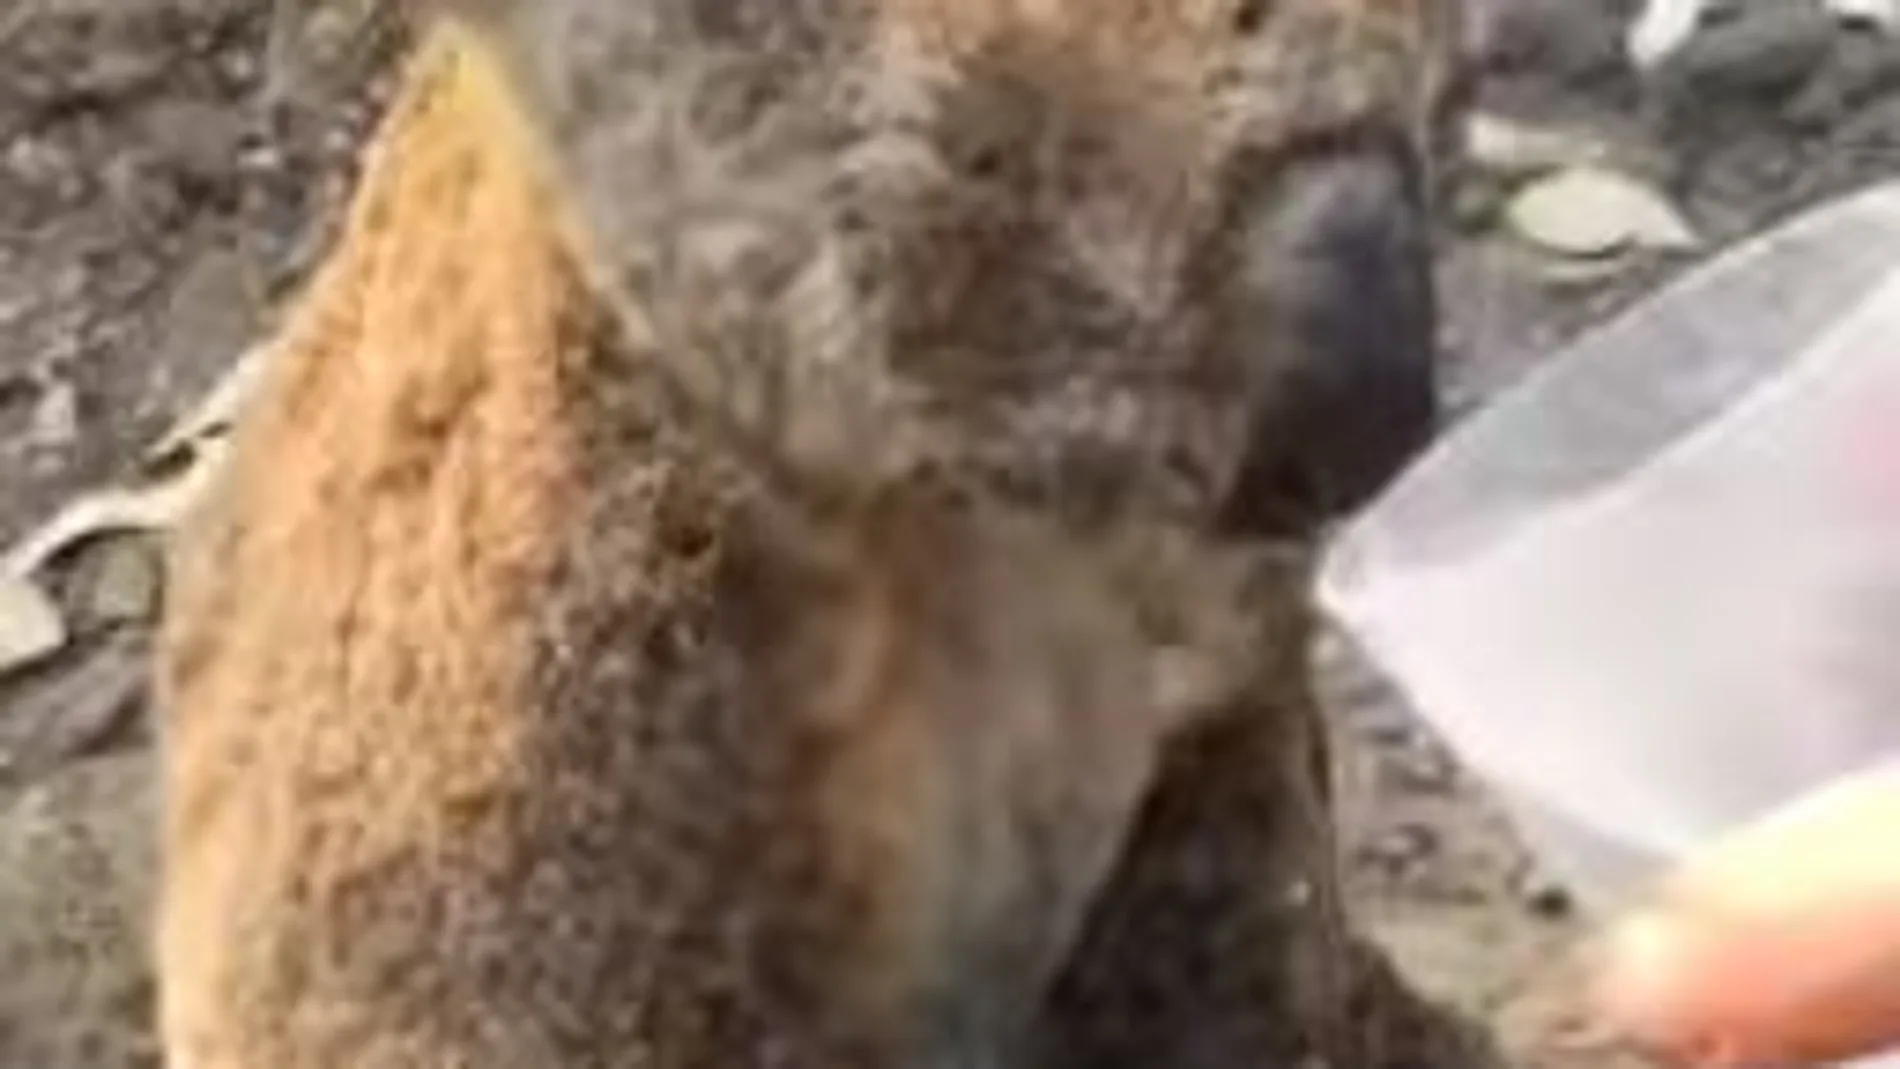 El koala, visiblemente con quemaduras y sentado y desolado bebiendo agua